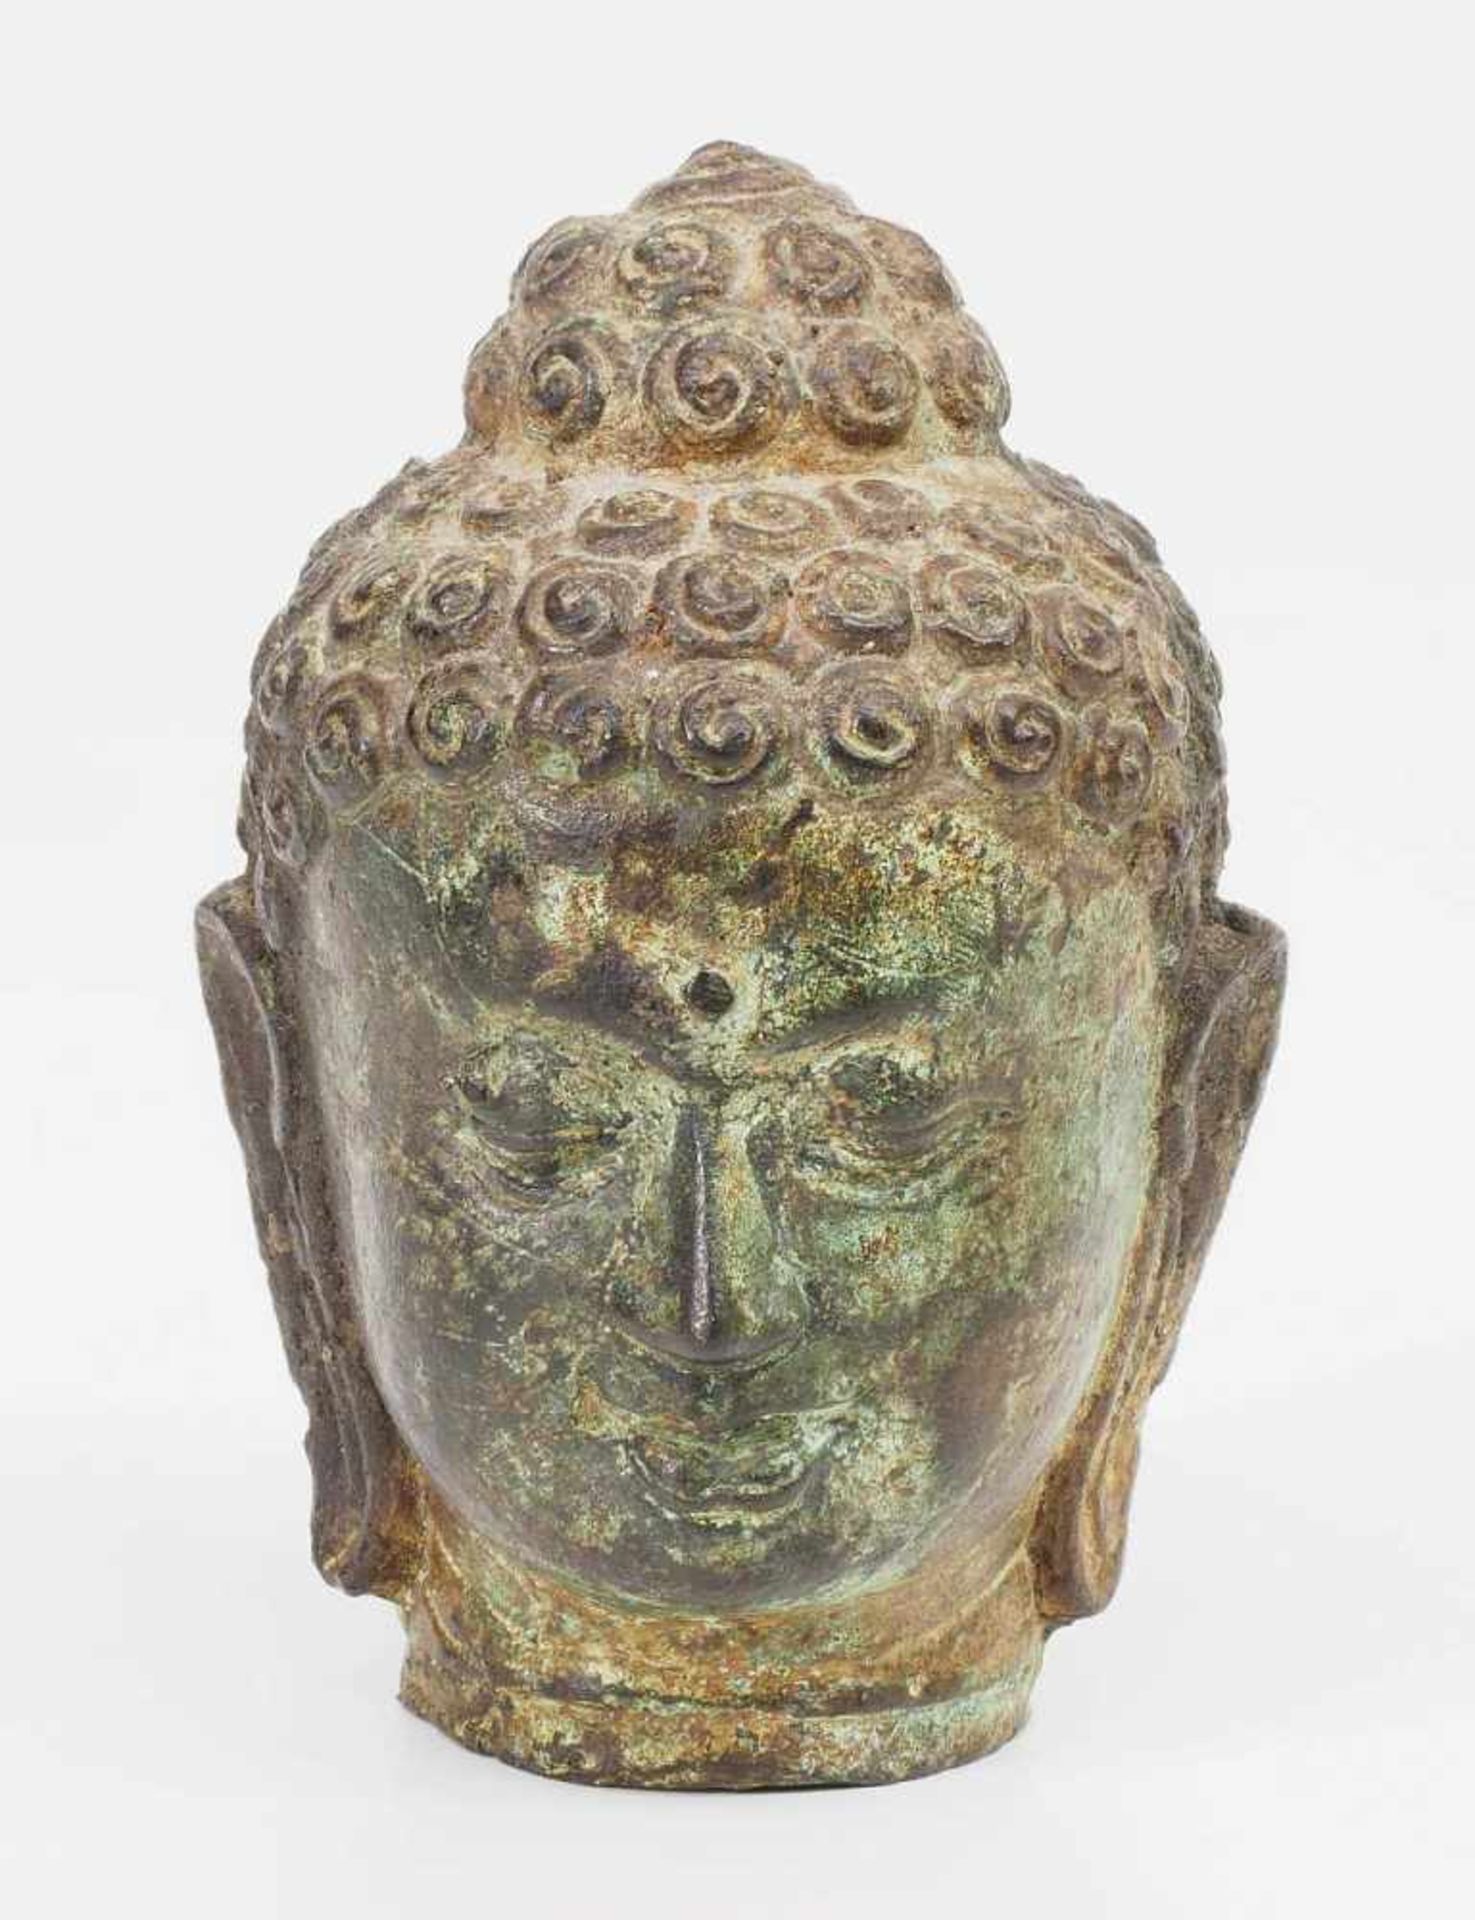 Kleiner Buddha-Kopf. Asien.Kleiner Buddha-Kopf. Asien. Bronze mit Alterspatina, leicht grünlich. - Image 2 of 6